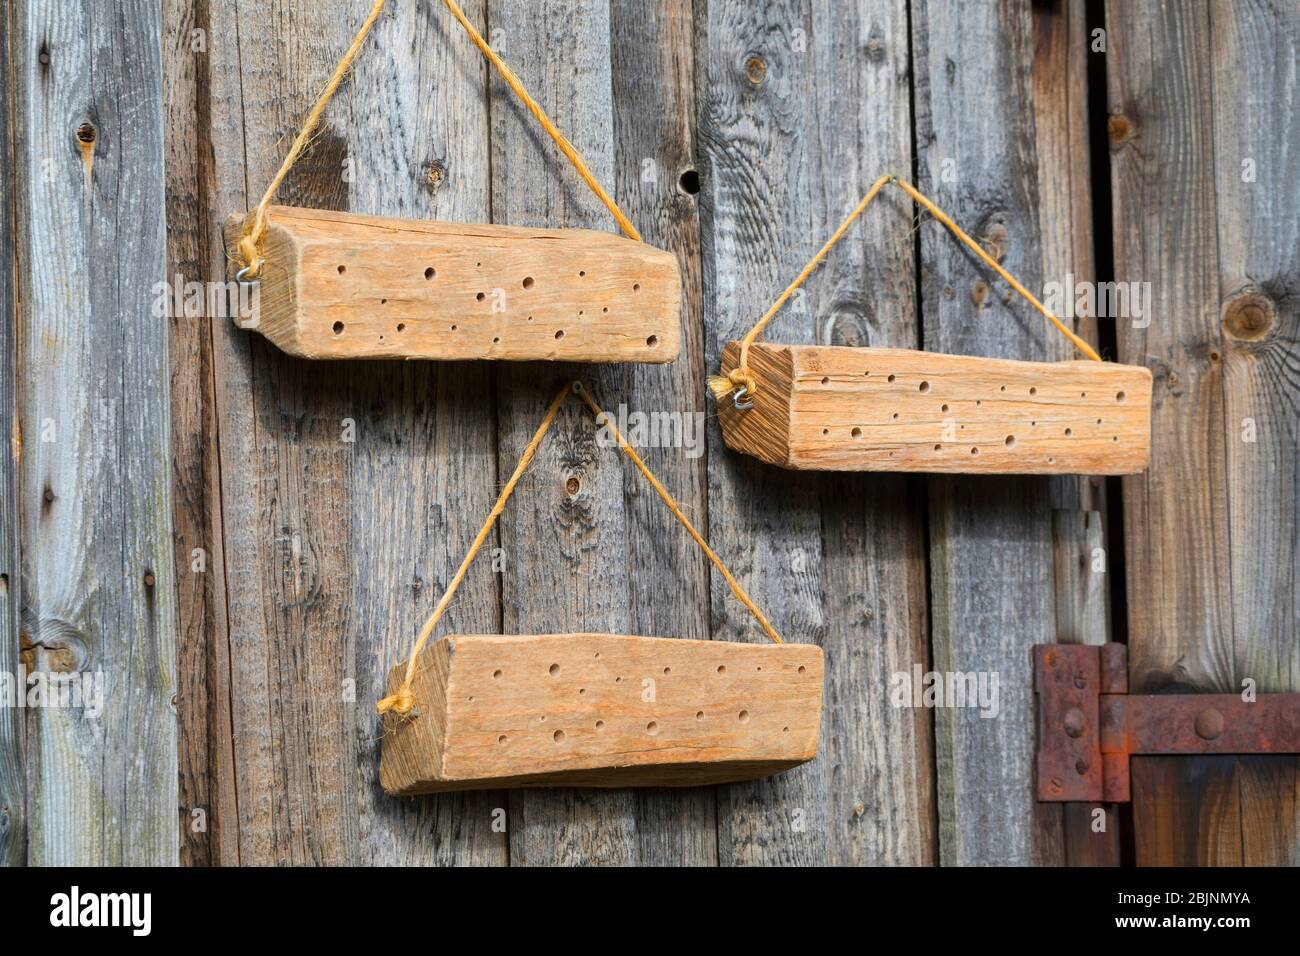 ayuda de anidado para las abejas silvestres, madera dura con agujeros en una pared de madera soleada Foto de stock